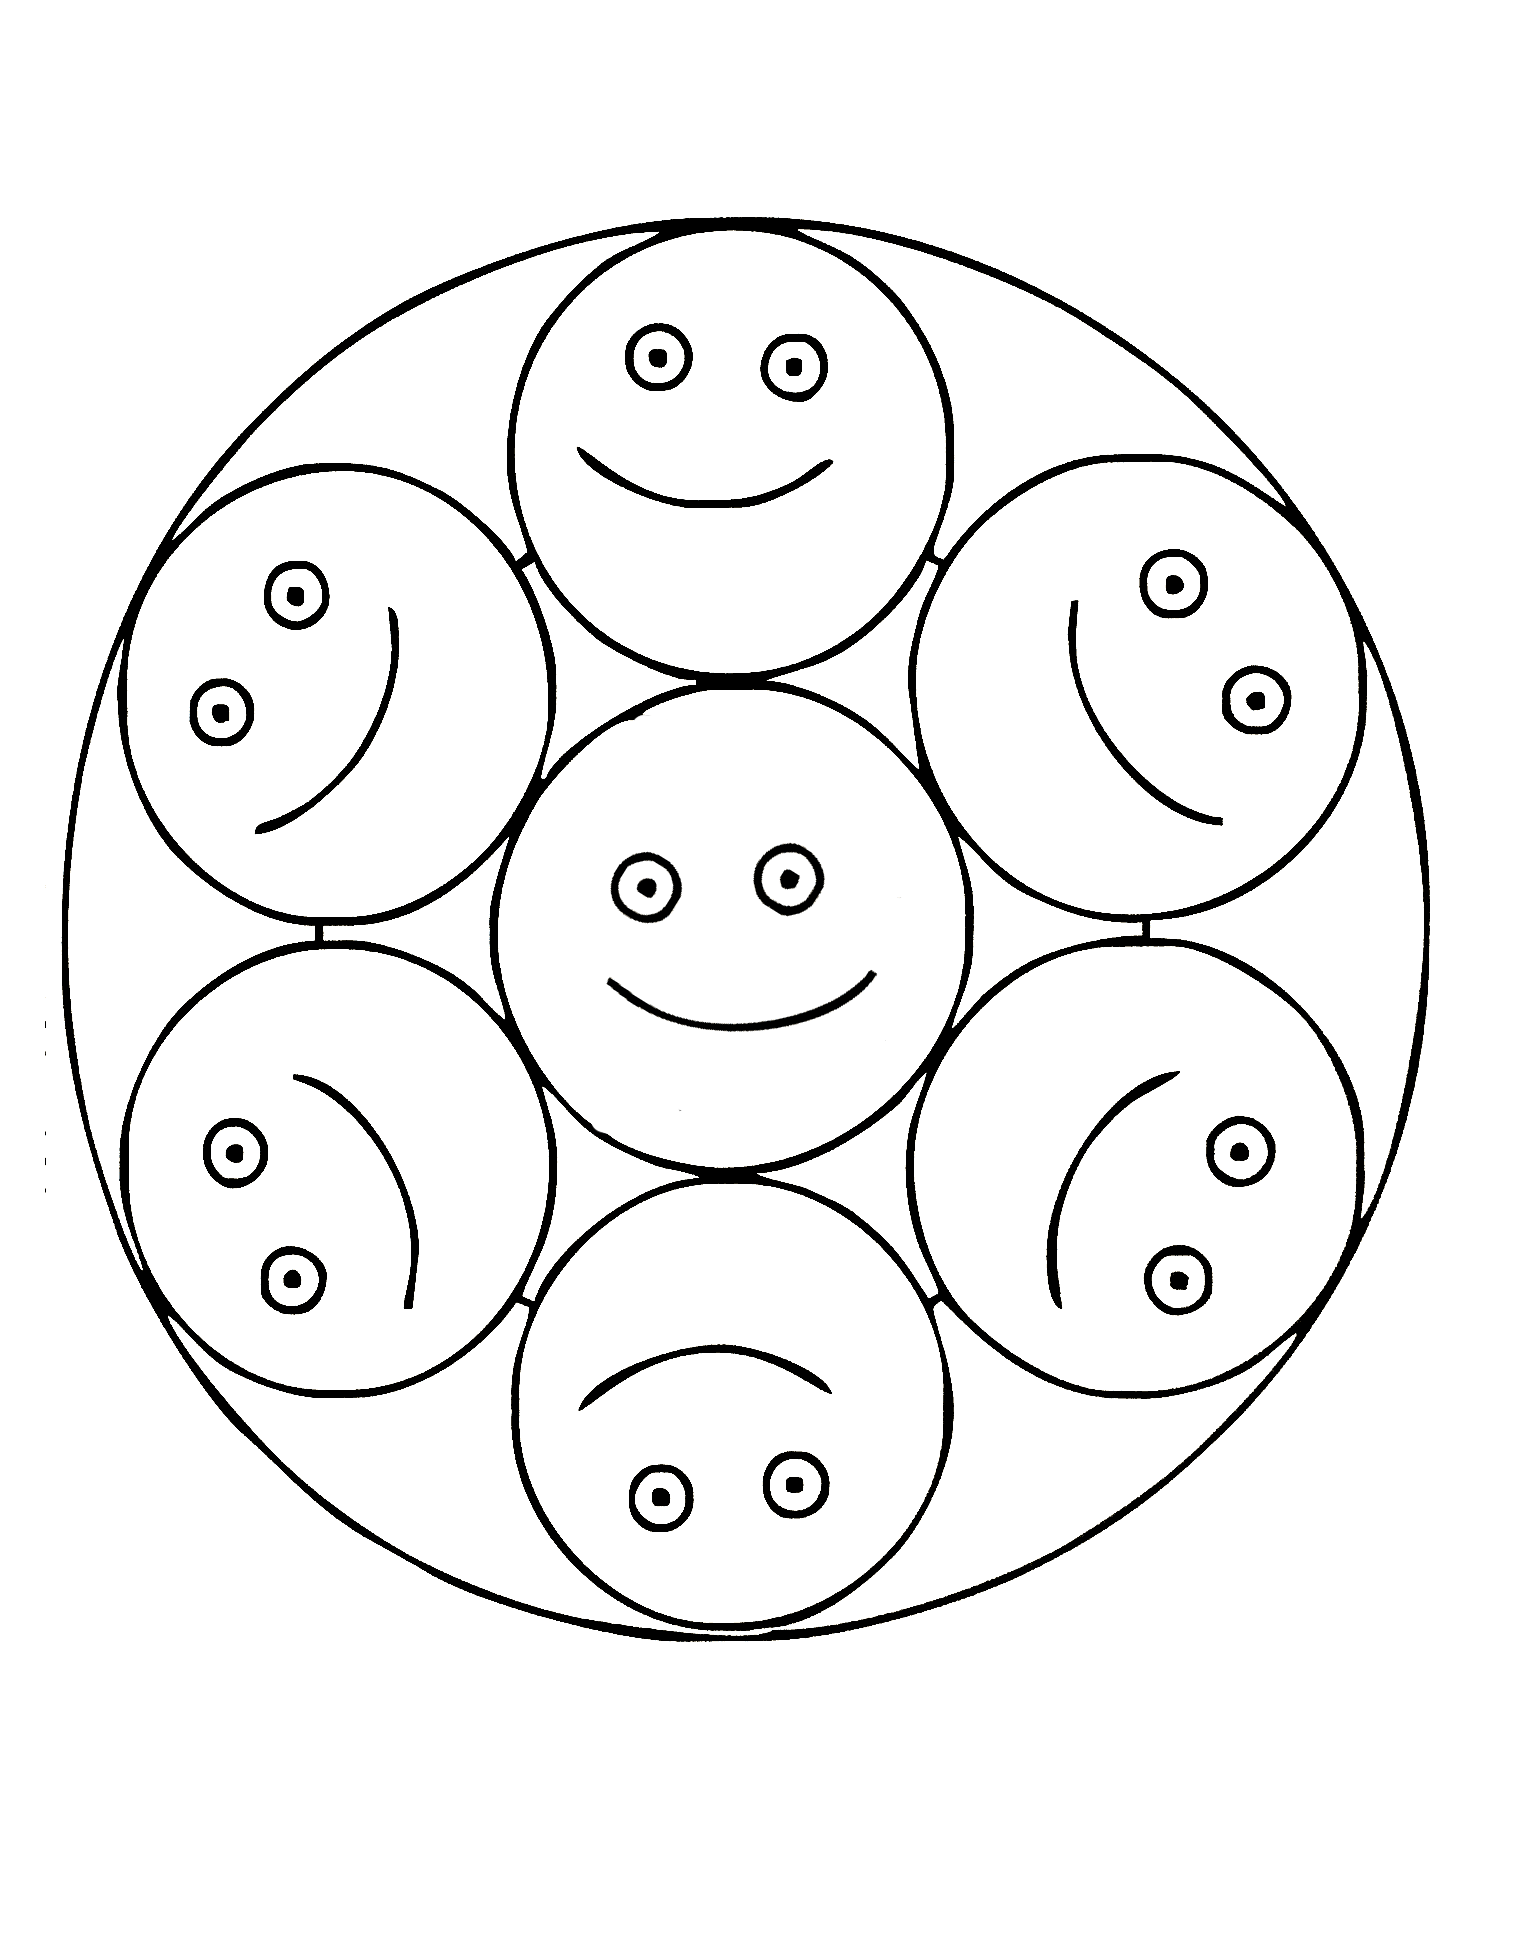 Mandala muito simples com smileys